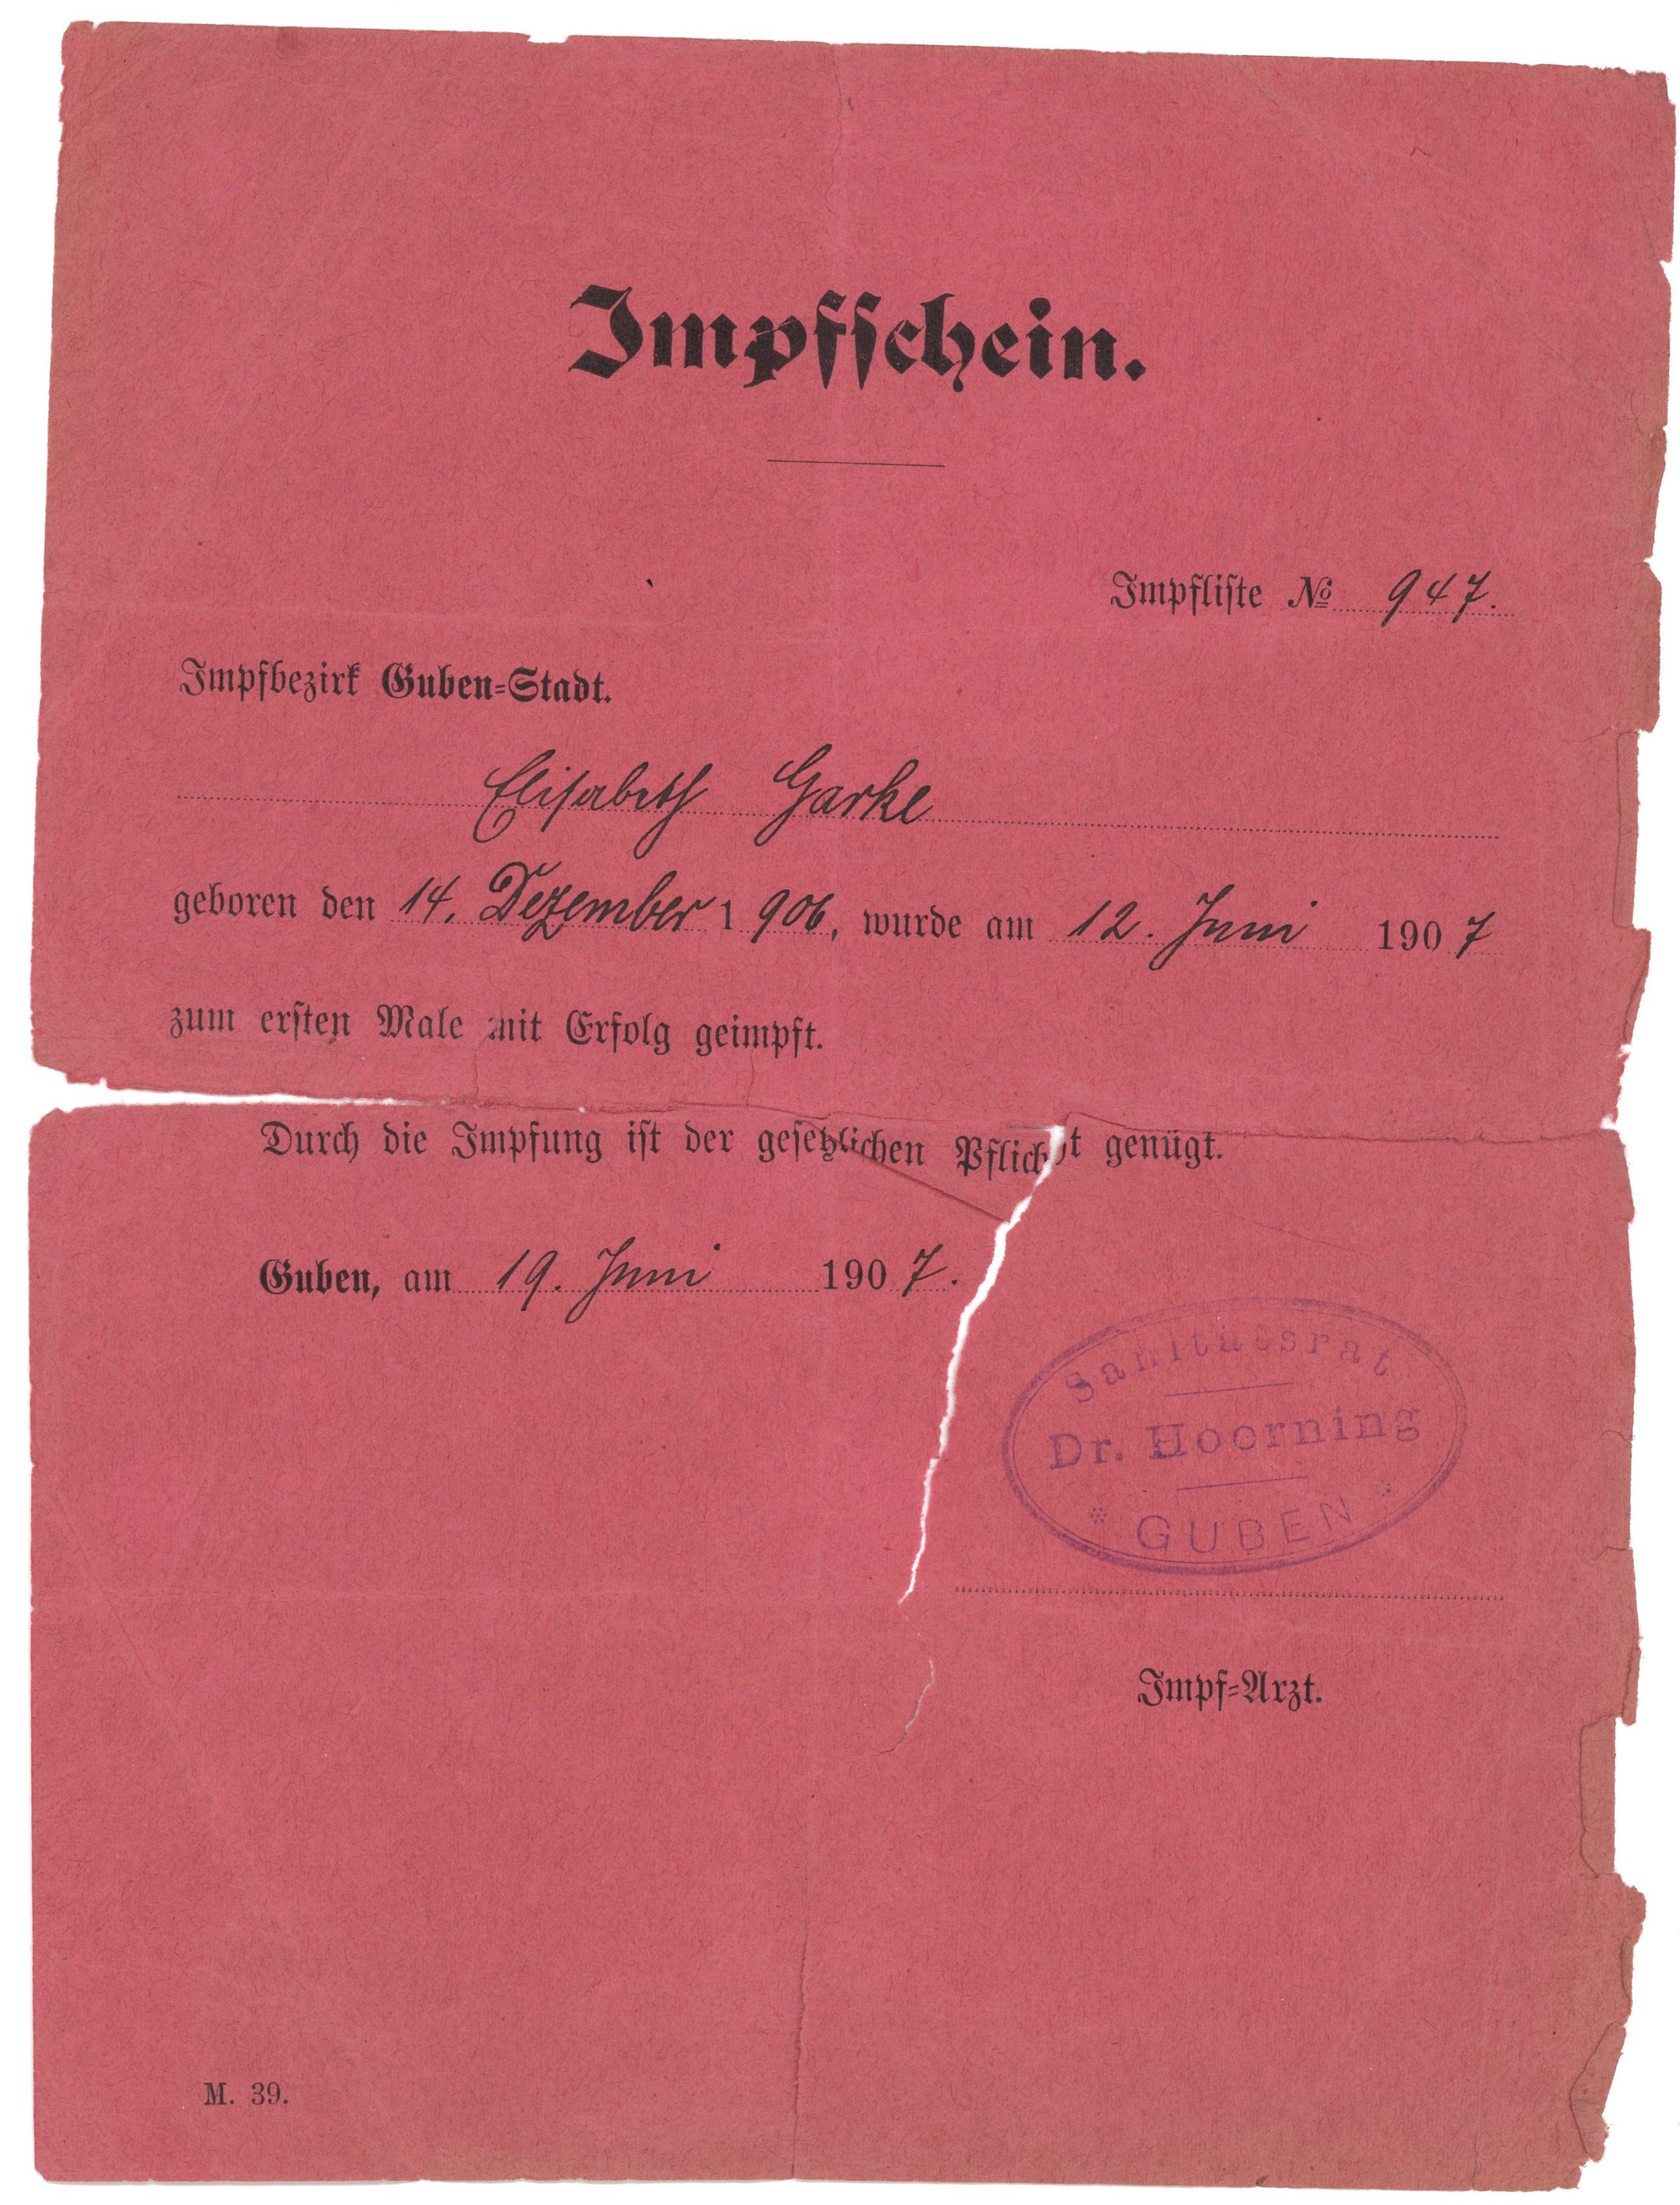 Impfschein für Elisabeth Garke in Guben 1907 (Landesgeschichtliche Vereinigung für die Mark Brandenburg e.V., Archiv CC BY)